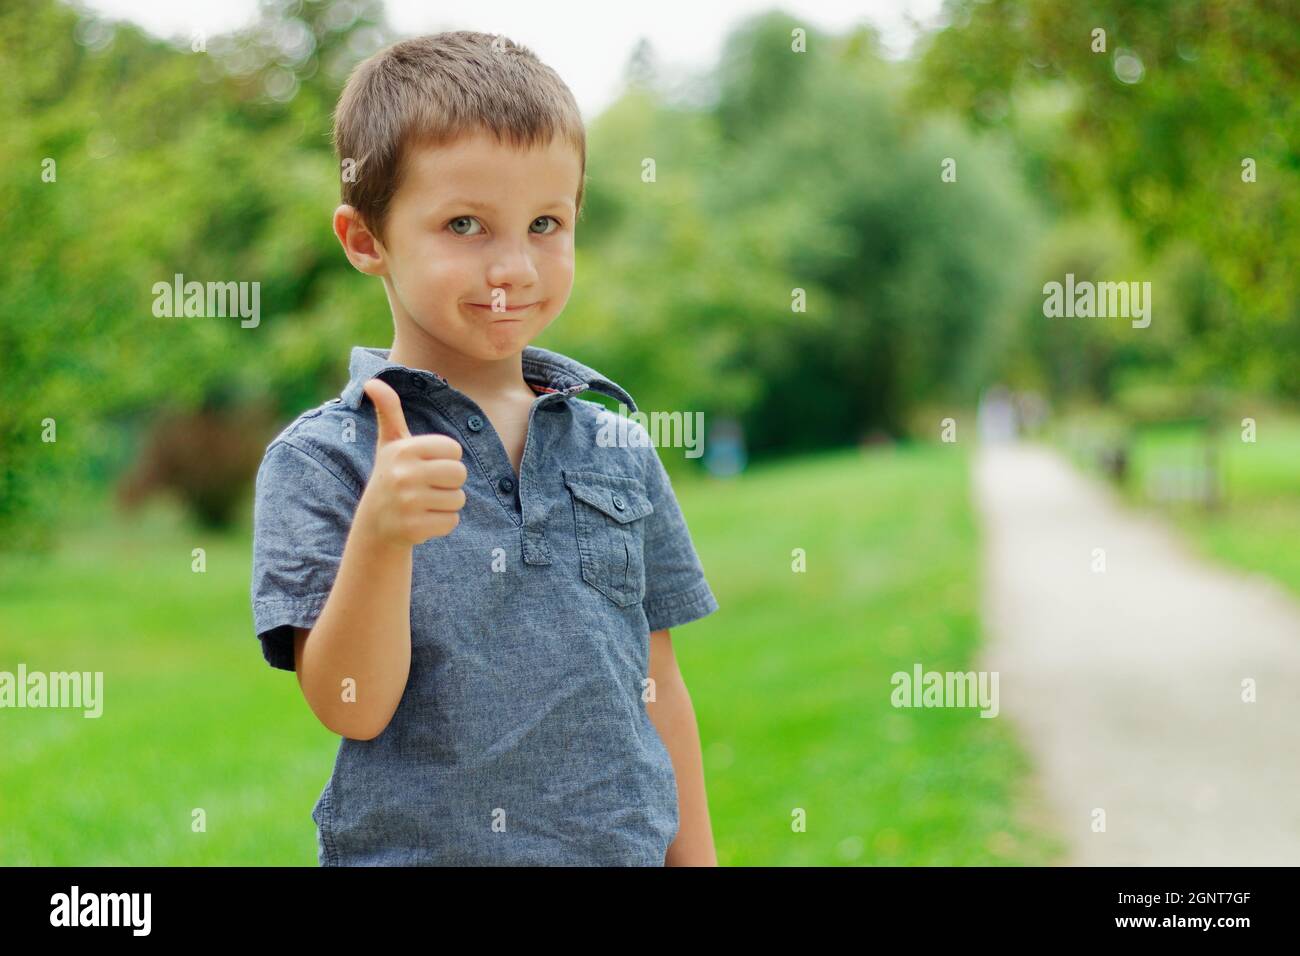 Retrato de un lindo niño pequeño en un parque verde de verano. Un niño rubio con ojos azules muestra el pulgar hacia arriba Foto de stock